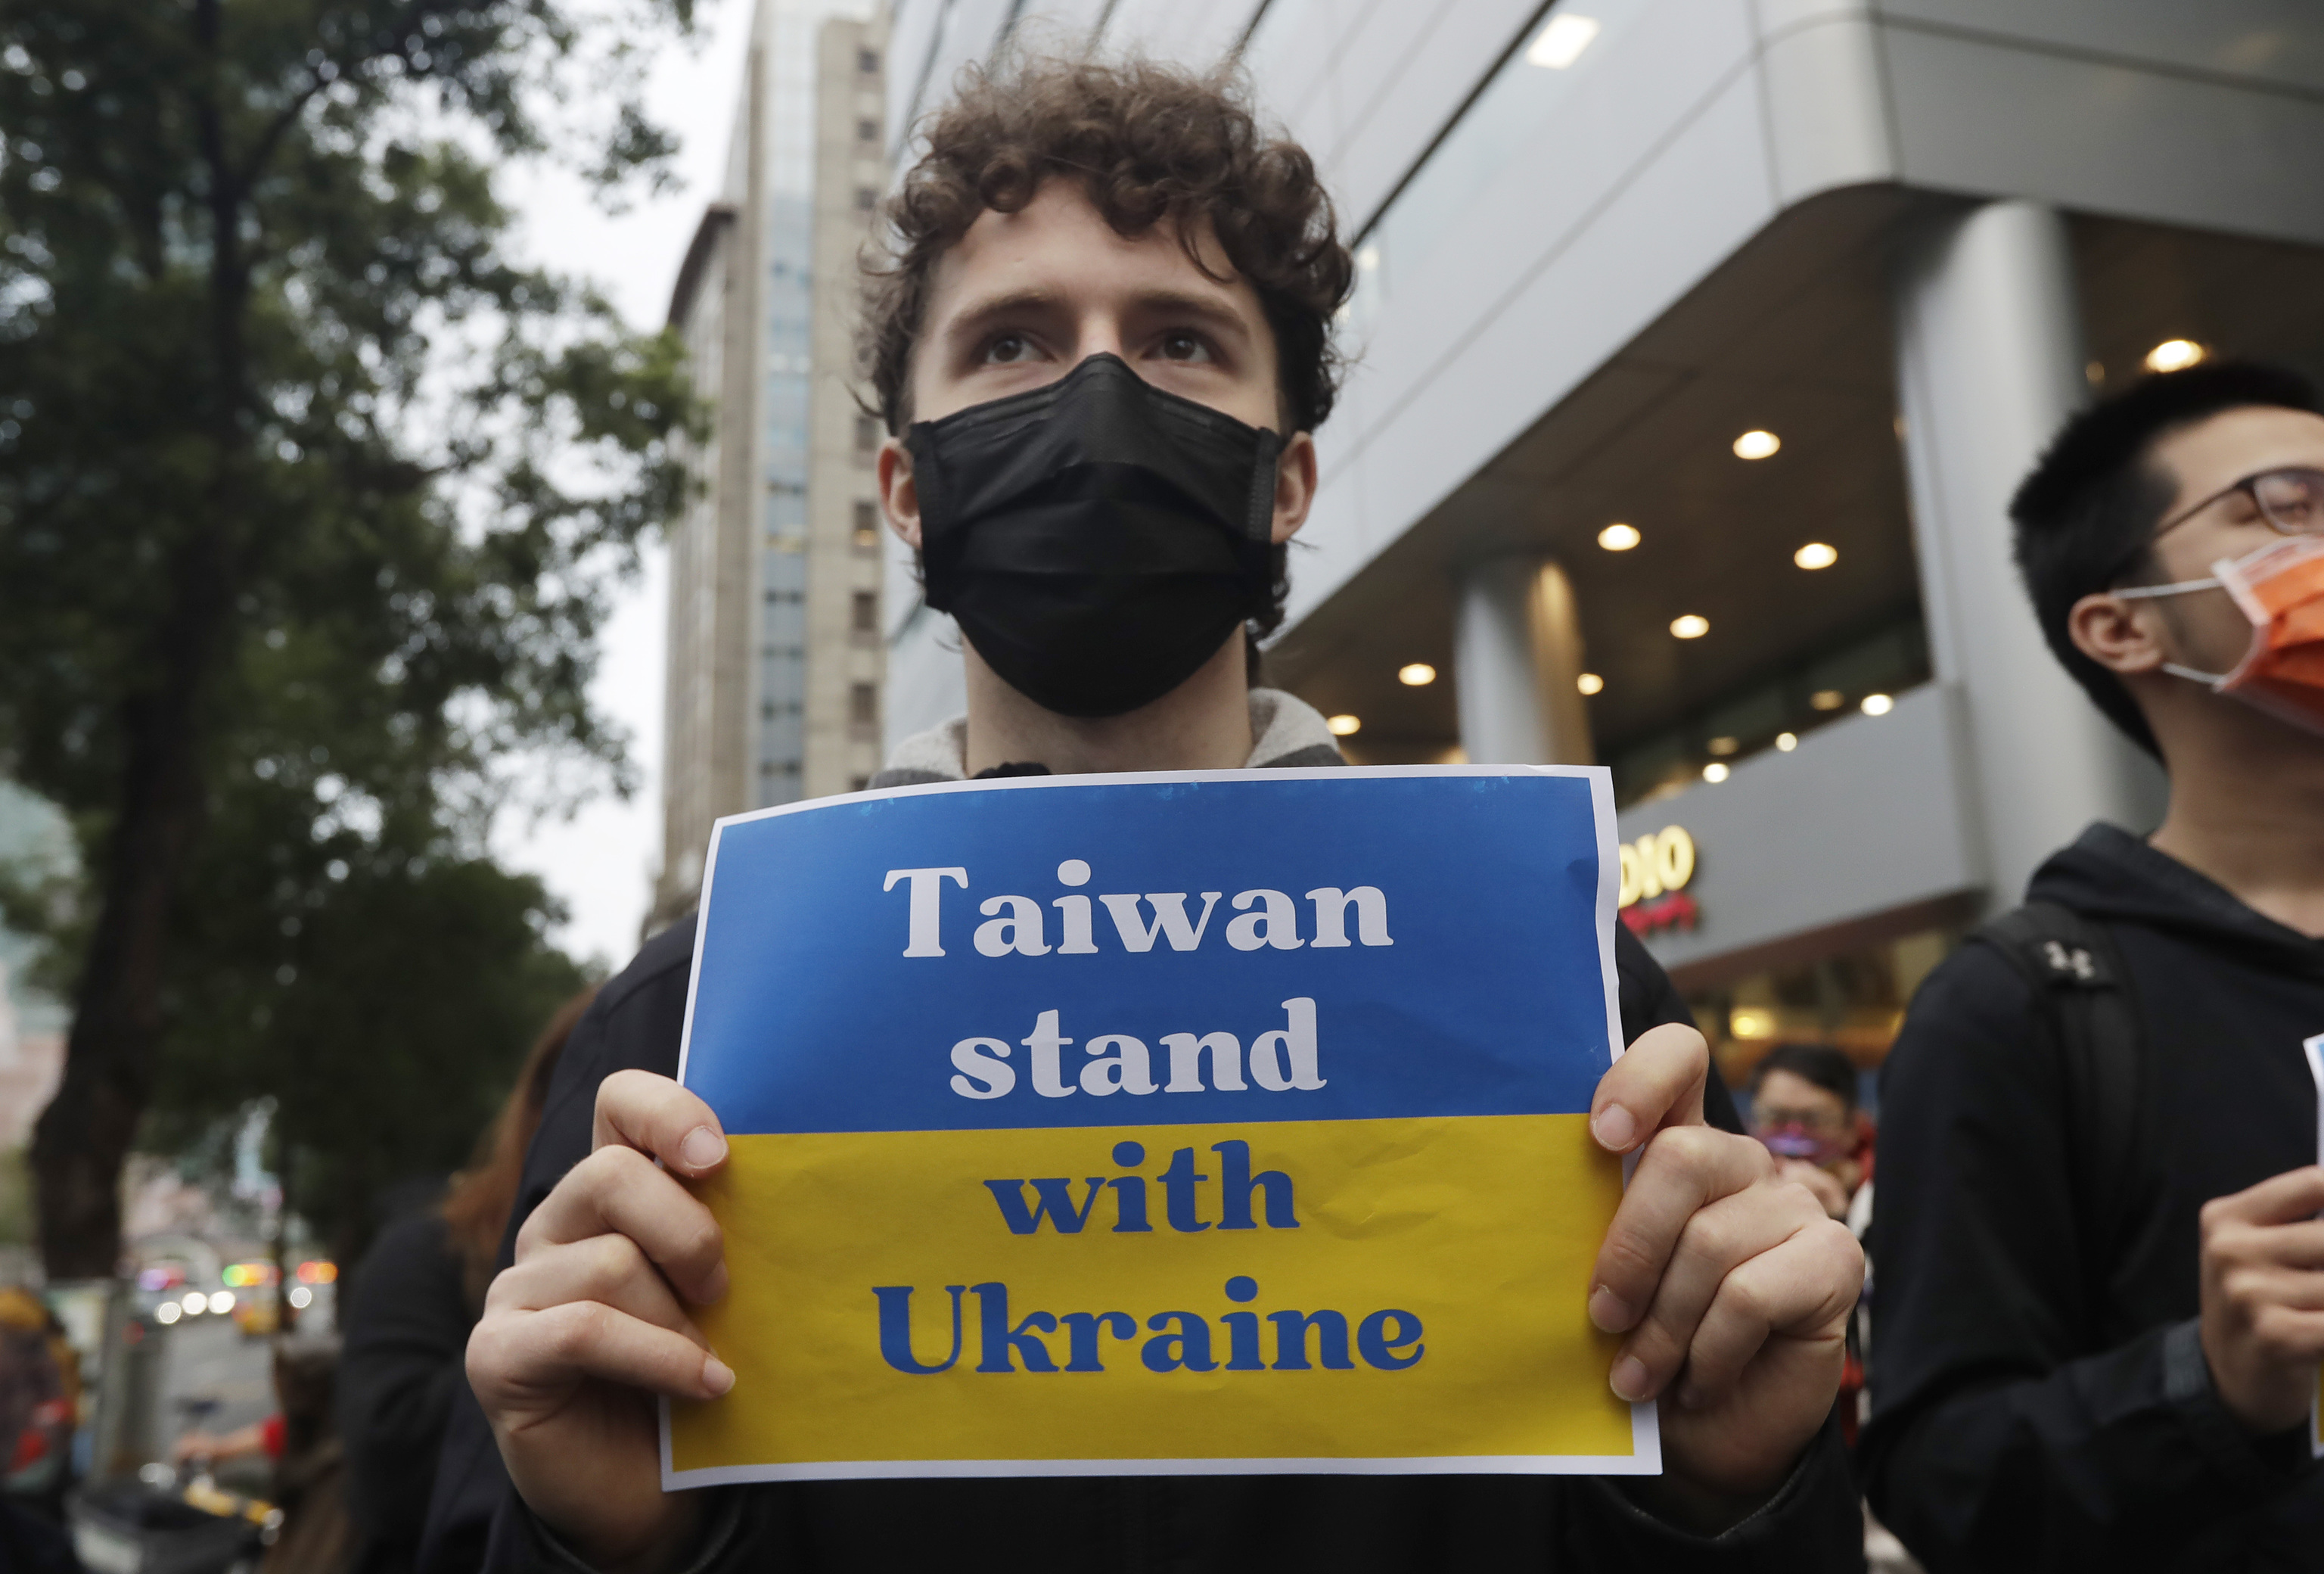 Un hombre sostiene un cartel con un mensaje de apoyo a Taiwan.